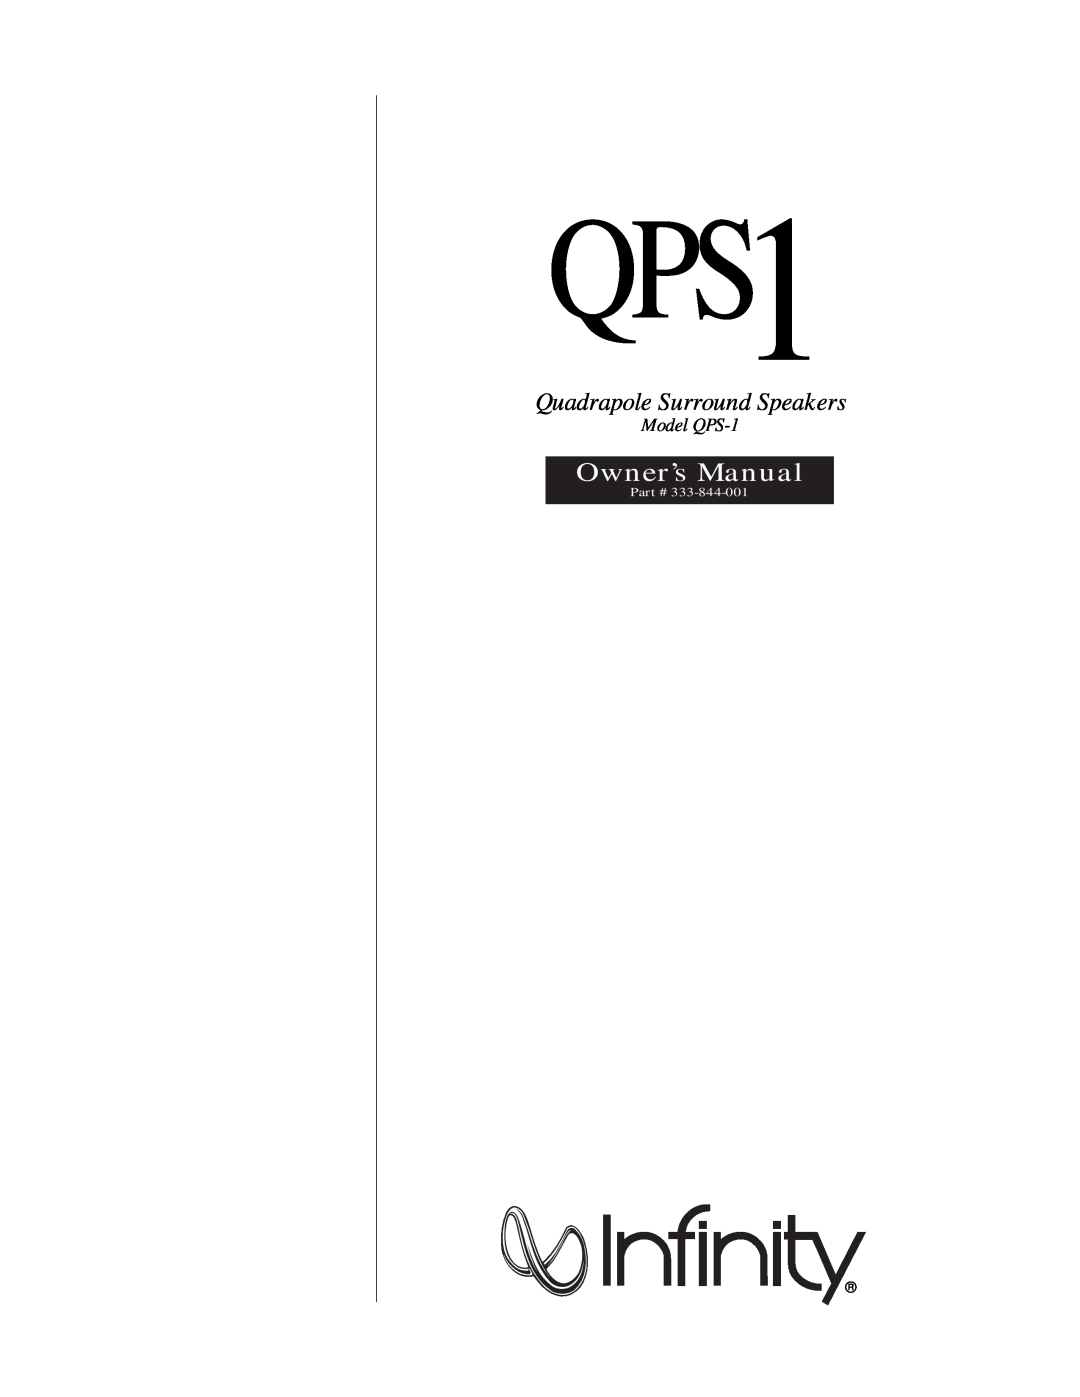 Infinity QPS1 owner manual Quadrapole Surround Speakers, Model QPS-1 